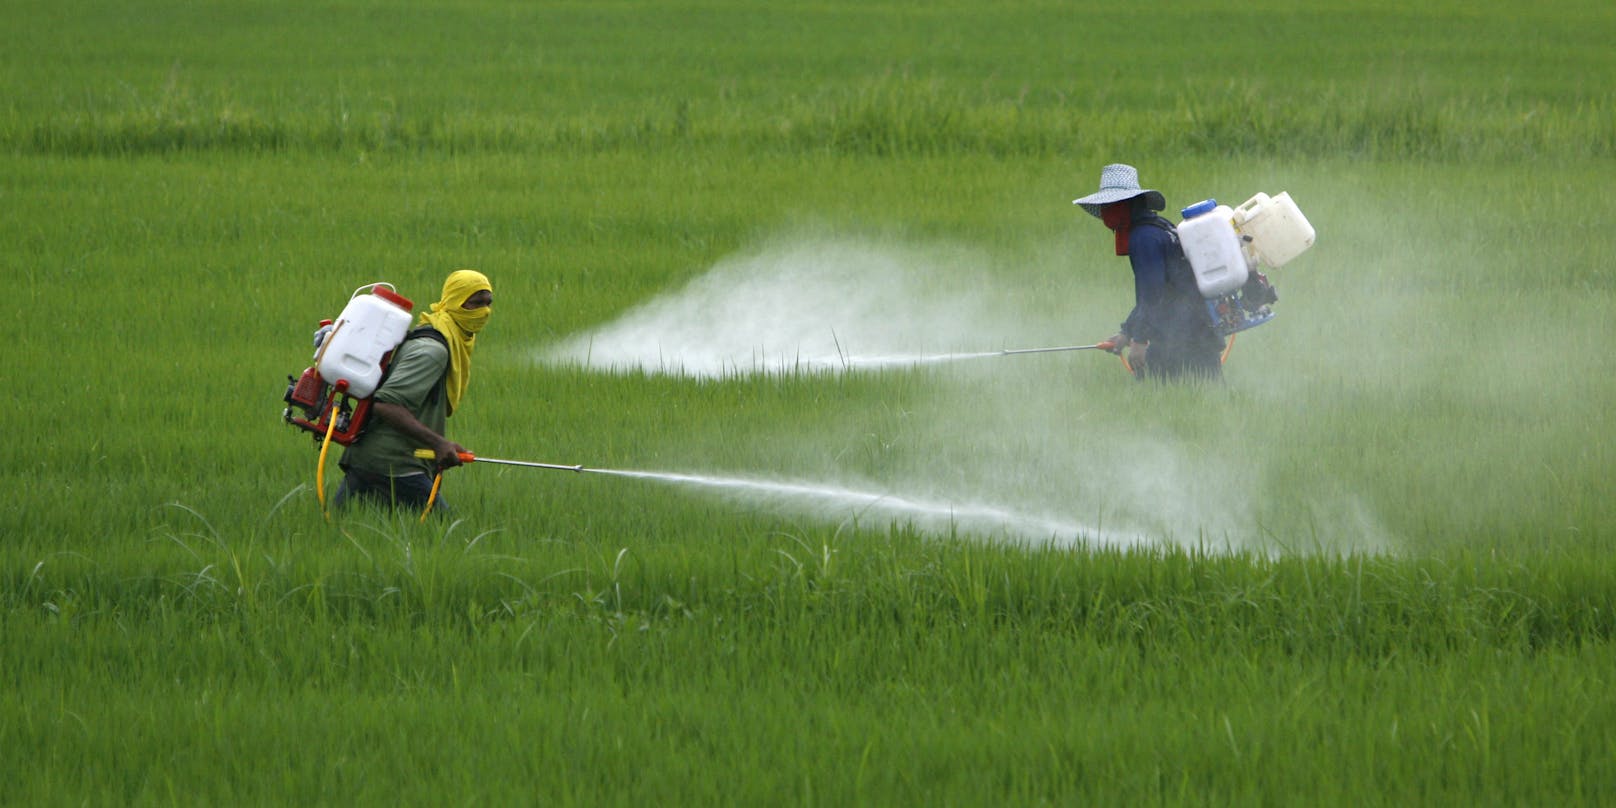 Reisbauern in Thailand besprühen ihre Felder mit Pestizid. (Symbolbild)